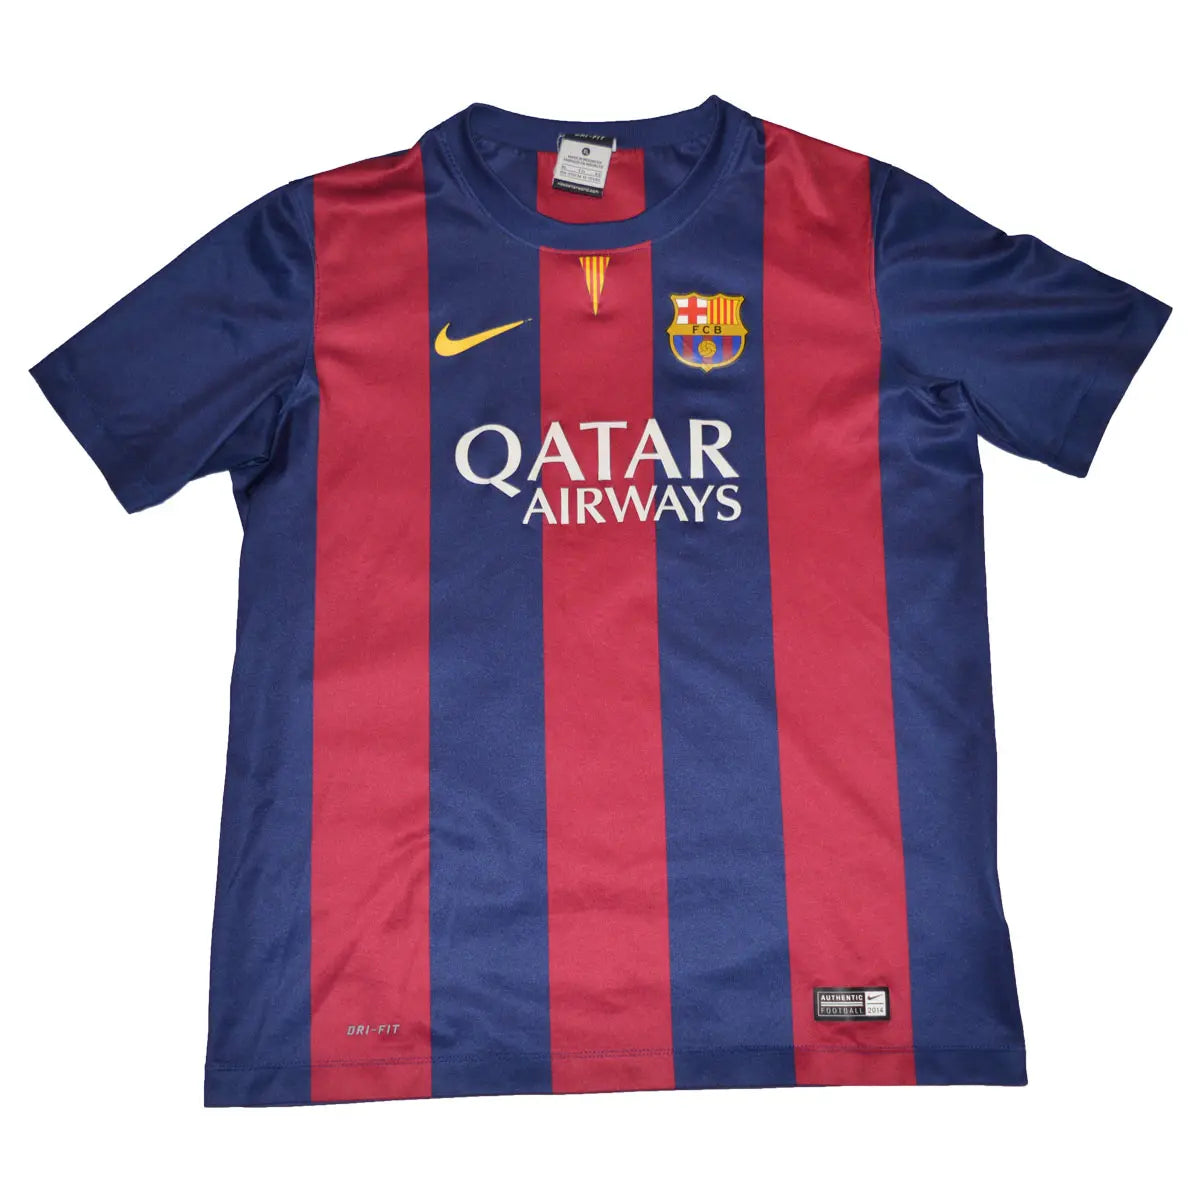 Maillot de foot rétro/vintage authentique rouge et bleu Nike du FC Barcelone domicile 2014-2015